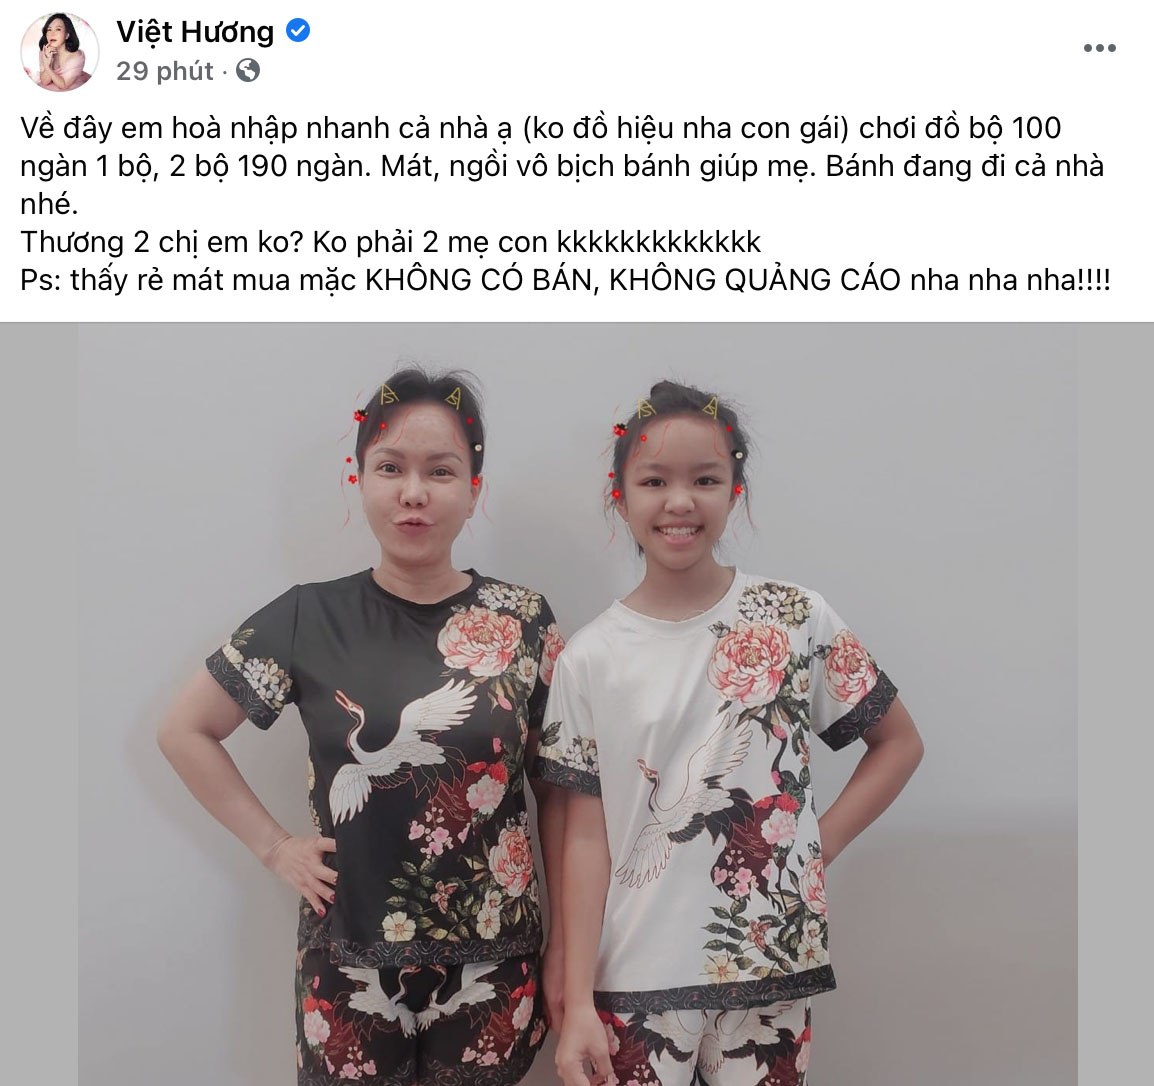 Ở biệt thự bạc tỷ, Việt Hương cho con gái mặc đồ bộ 100k, quyết nói không với hàng hiệu - 5